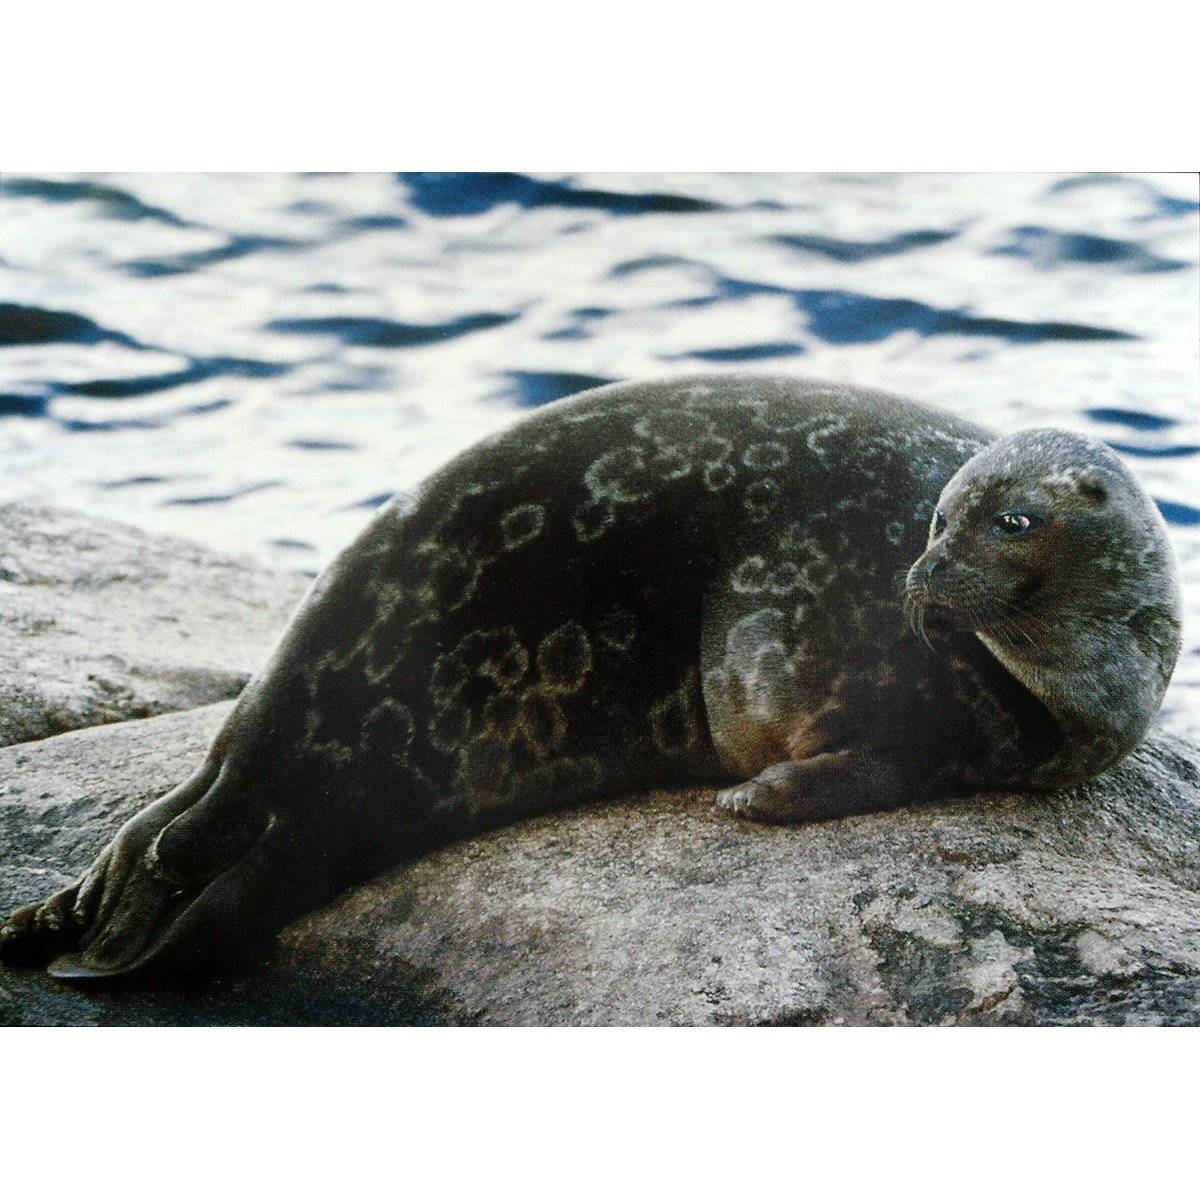 Байкальская нерпа — интересный образ жизни тюленя на байкале